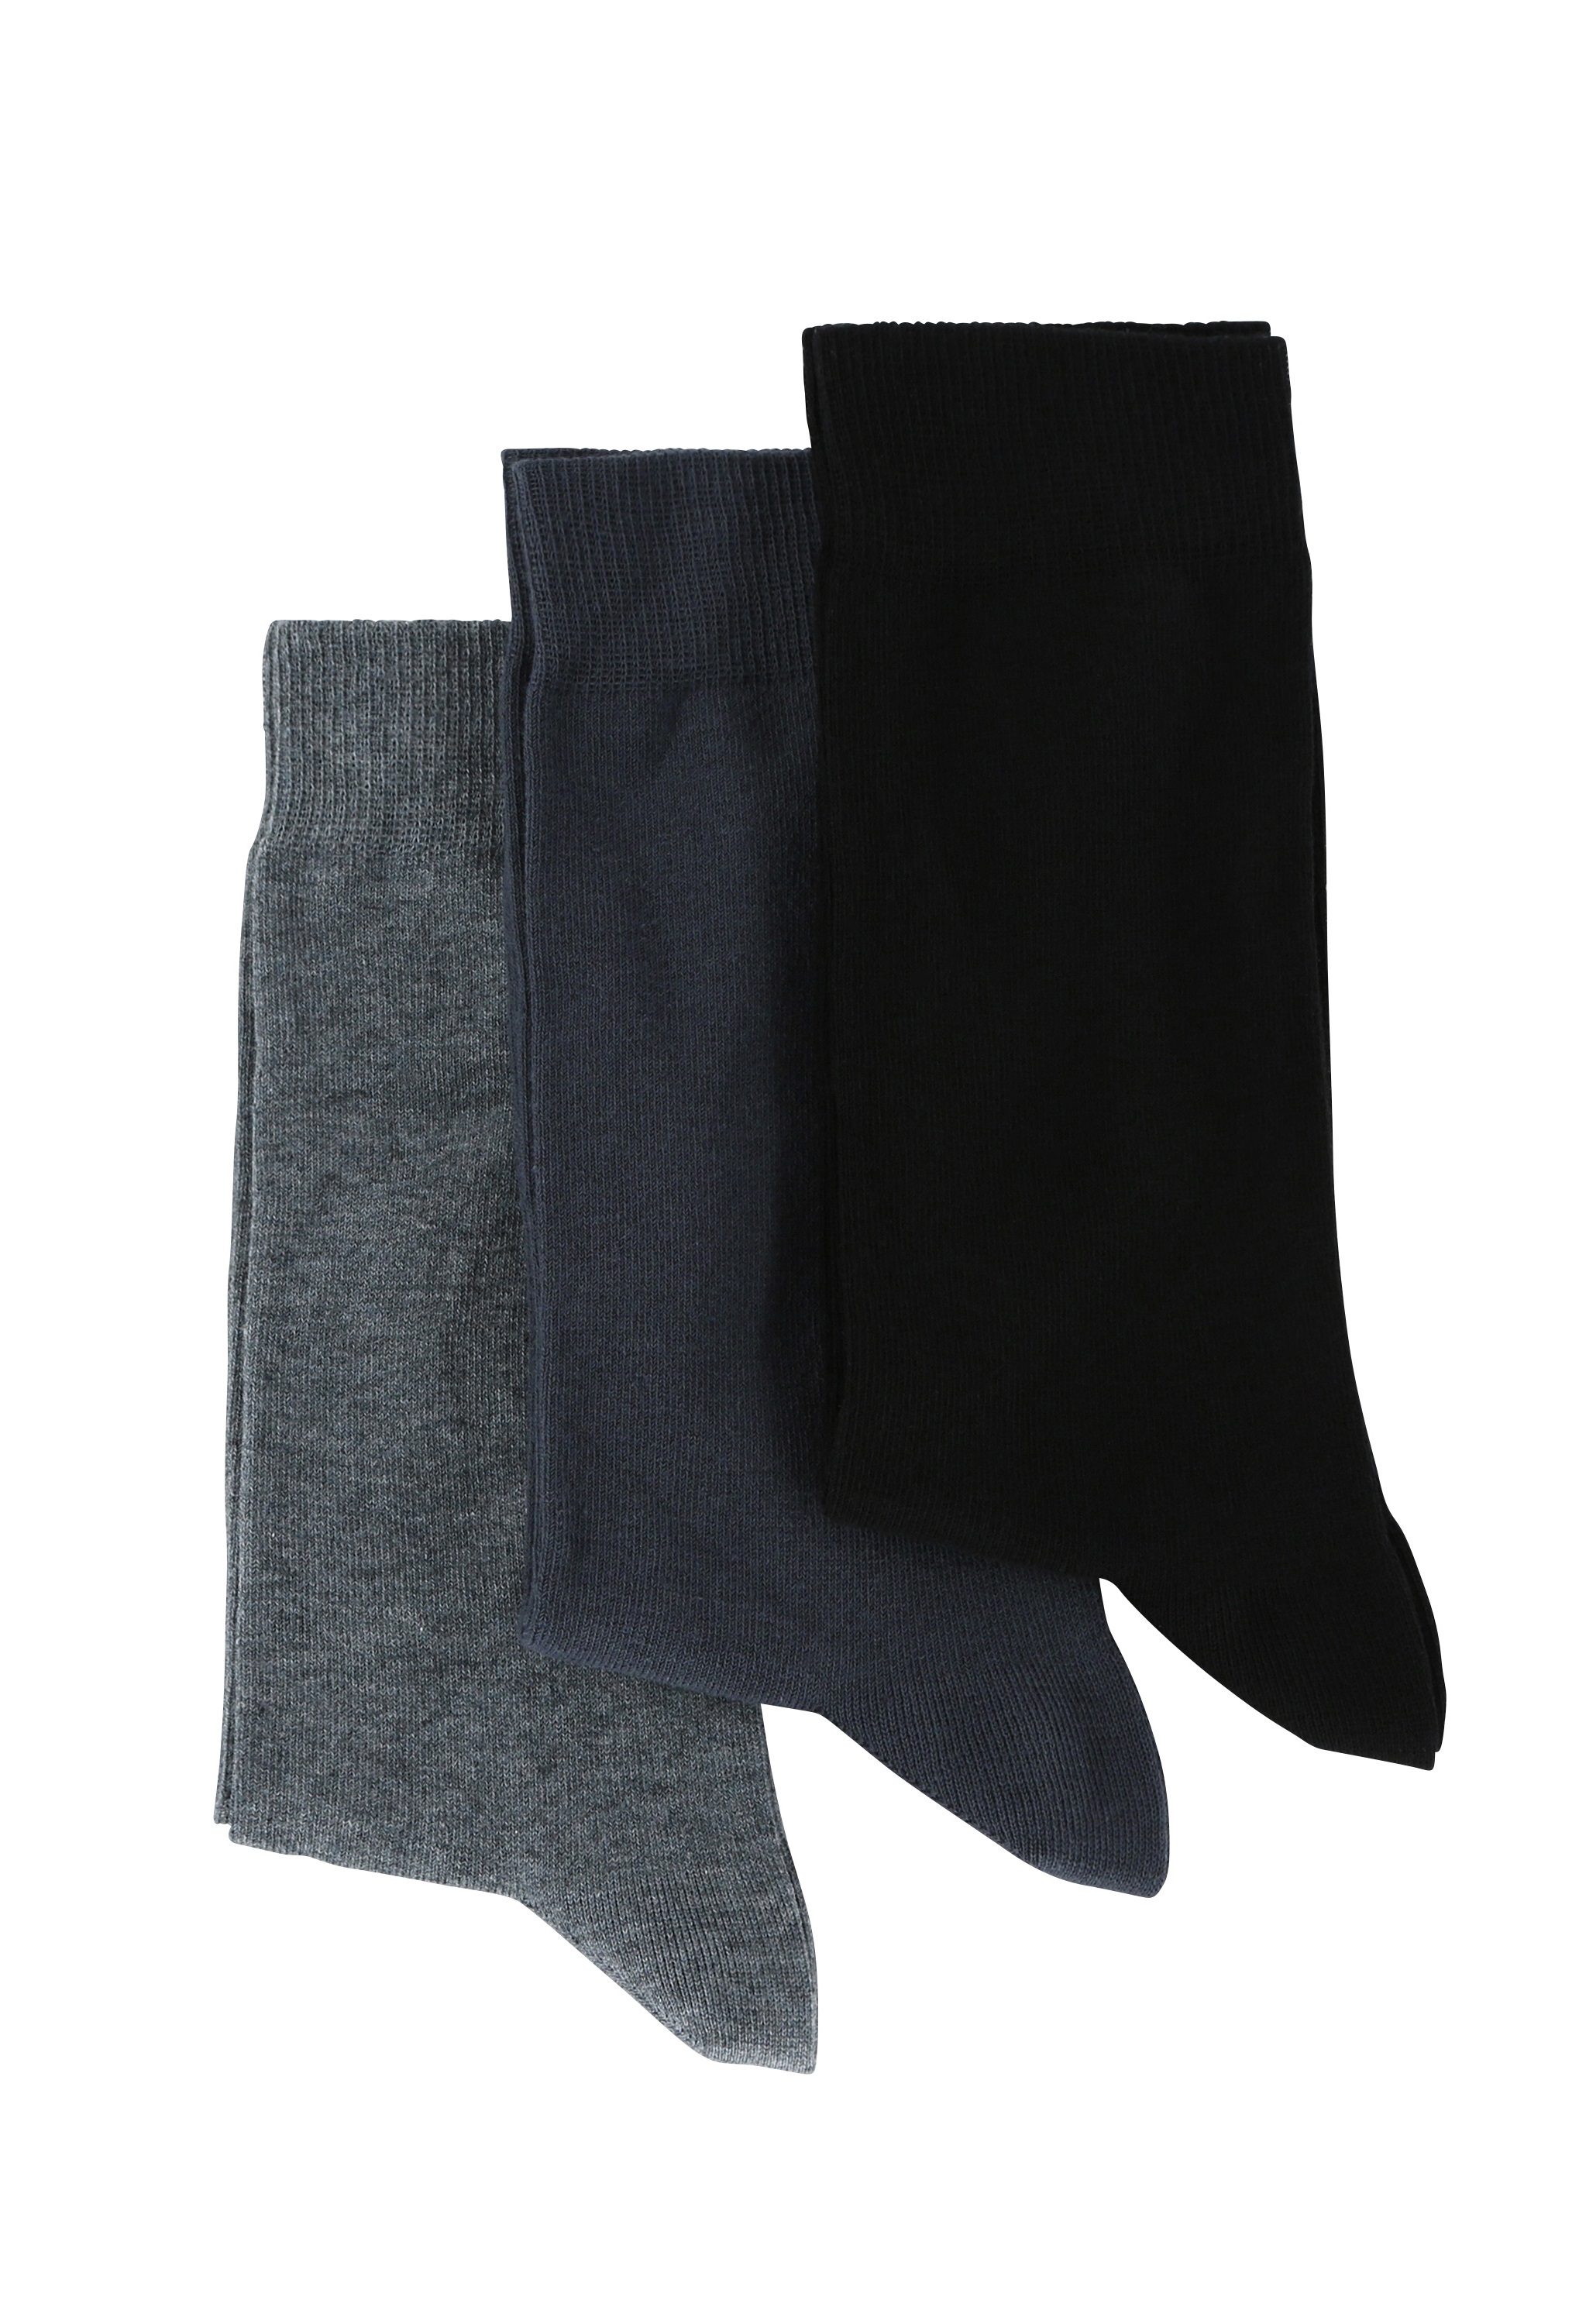 lot de 3 chaussettes unies gris noir